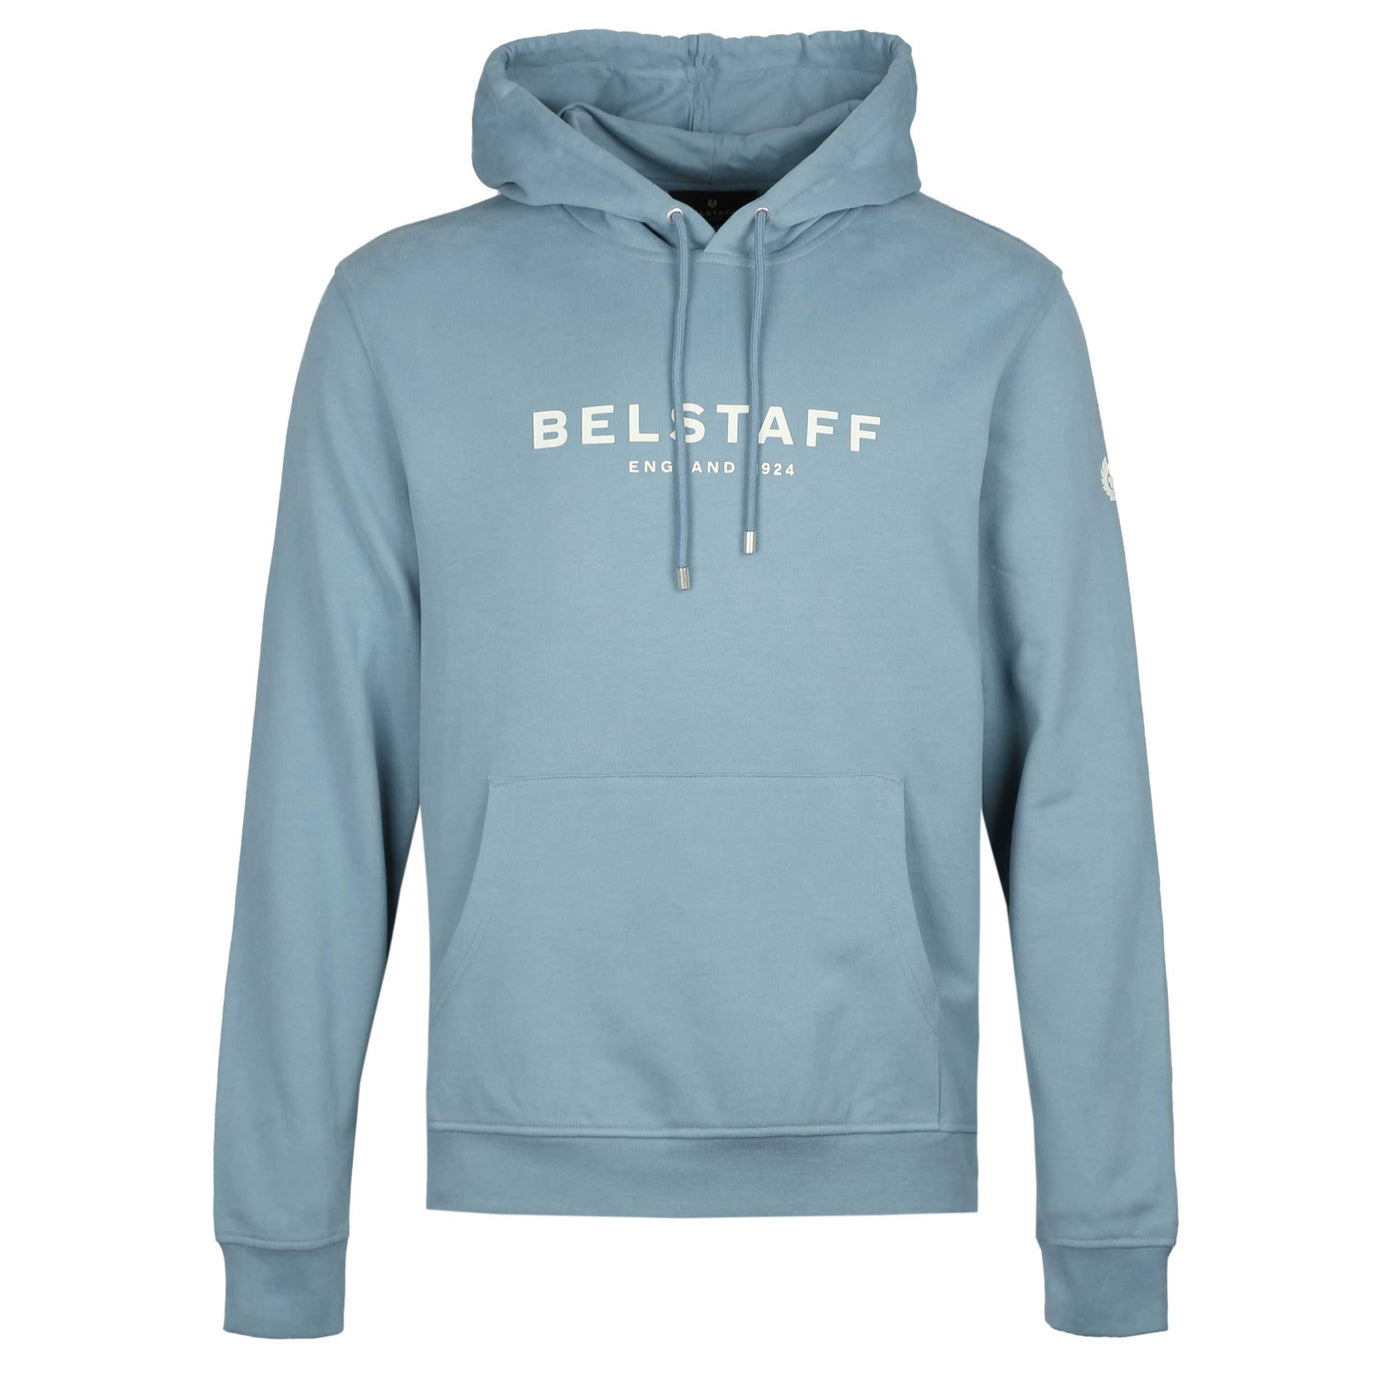 Belstaff 1924 Hooded Sweat Top in Arctic Blue